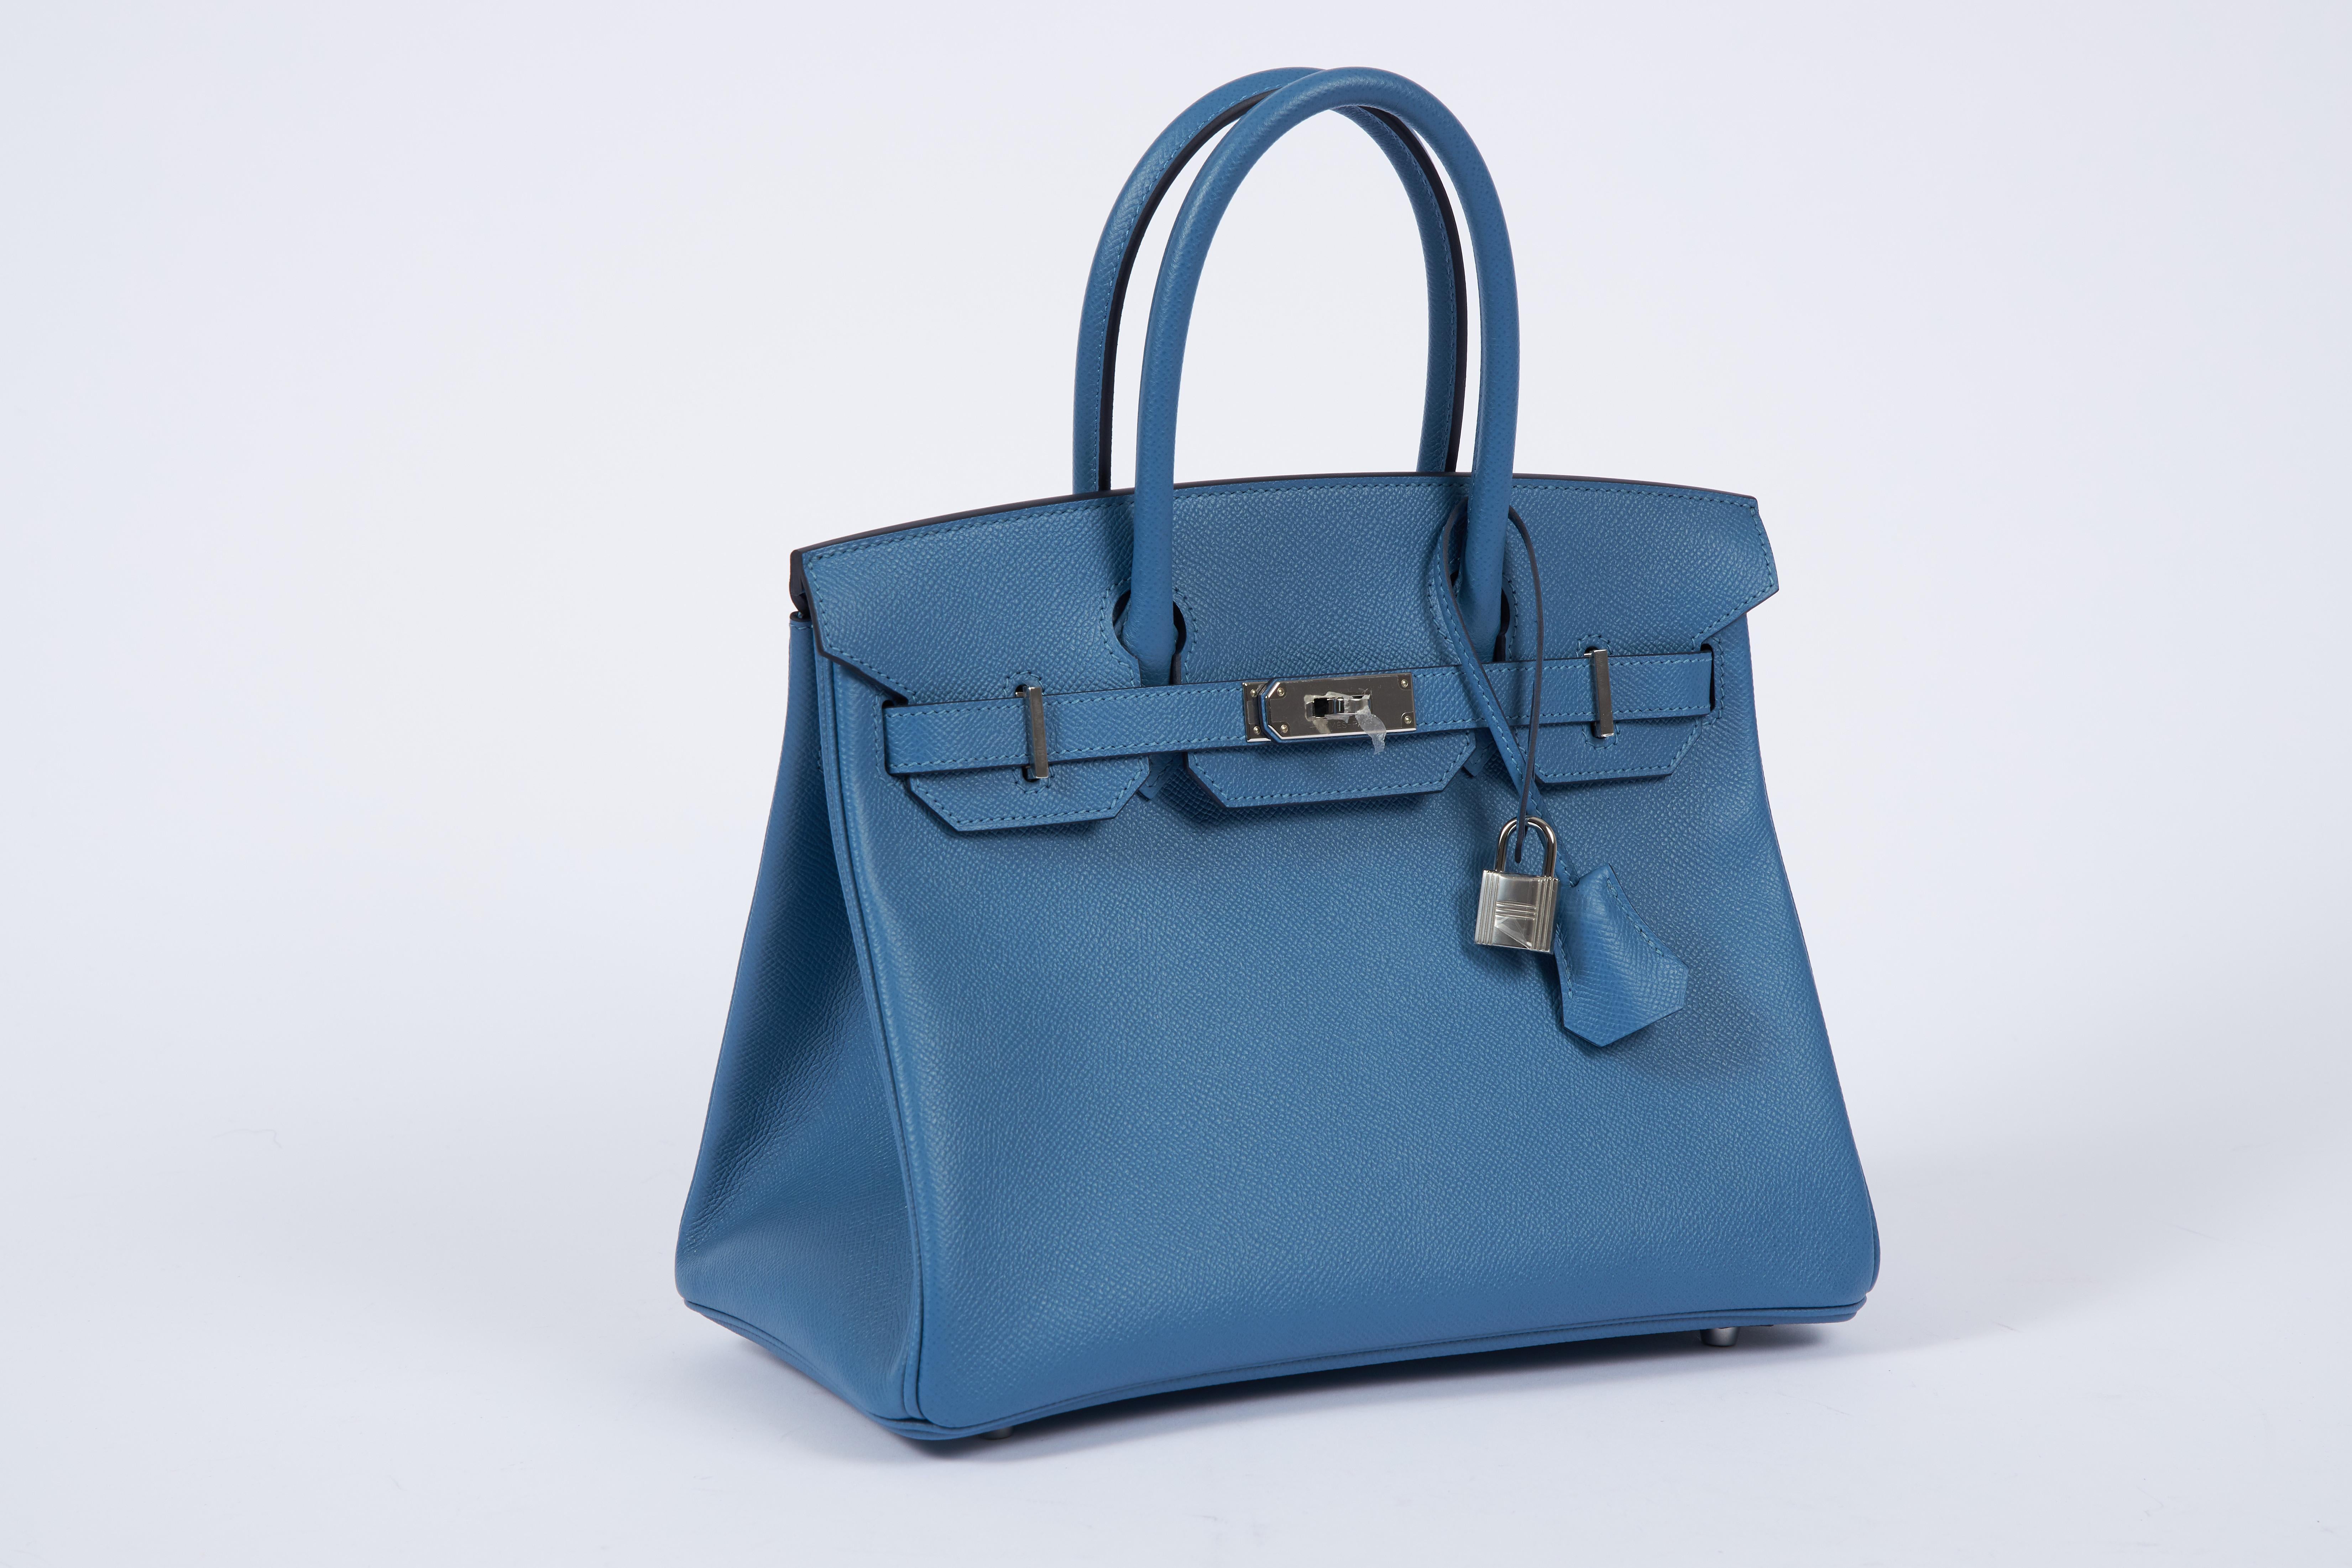 Hermès 30cm Birkin in blue azur togo leather with palladium hardware. Handle drop, 3.75